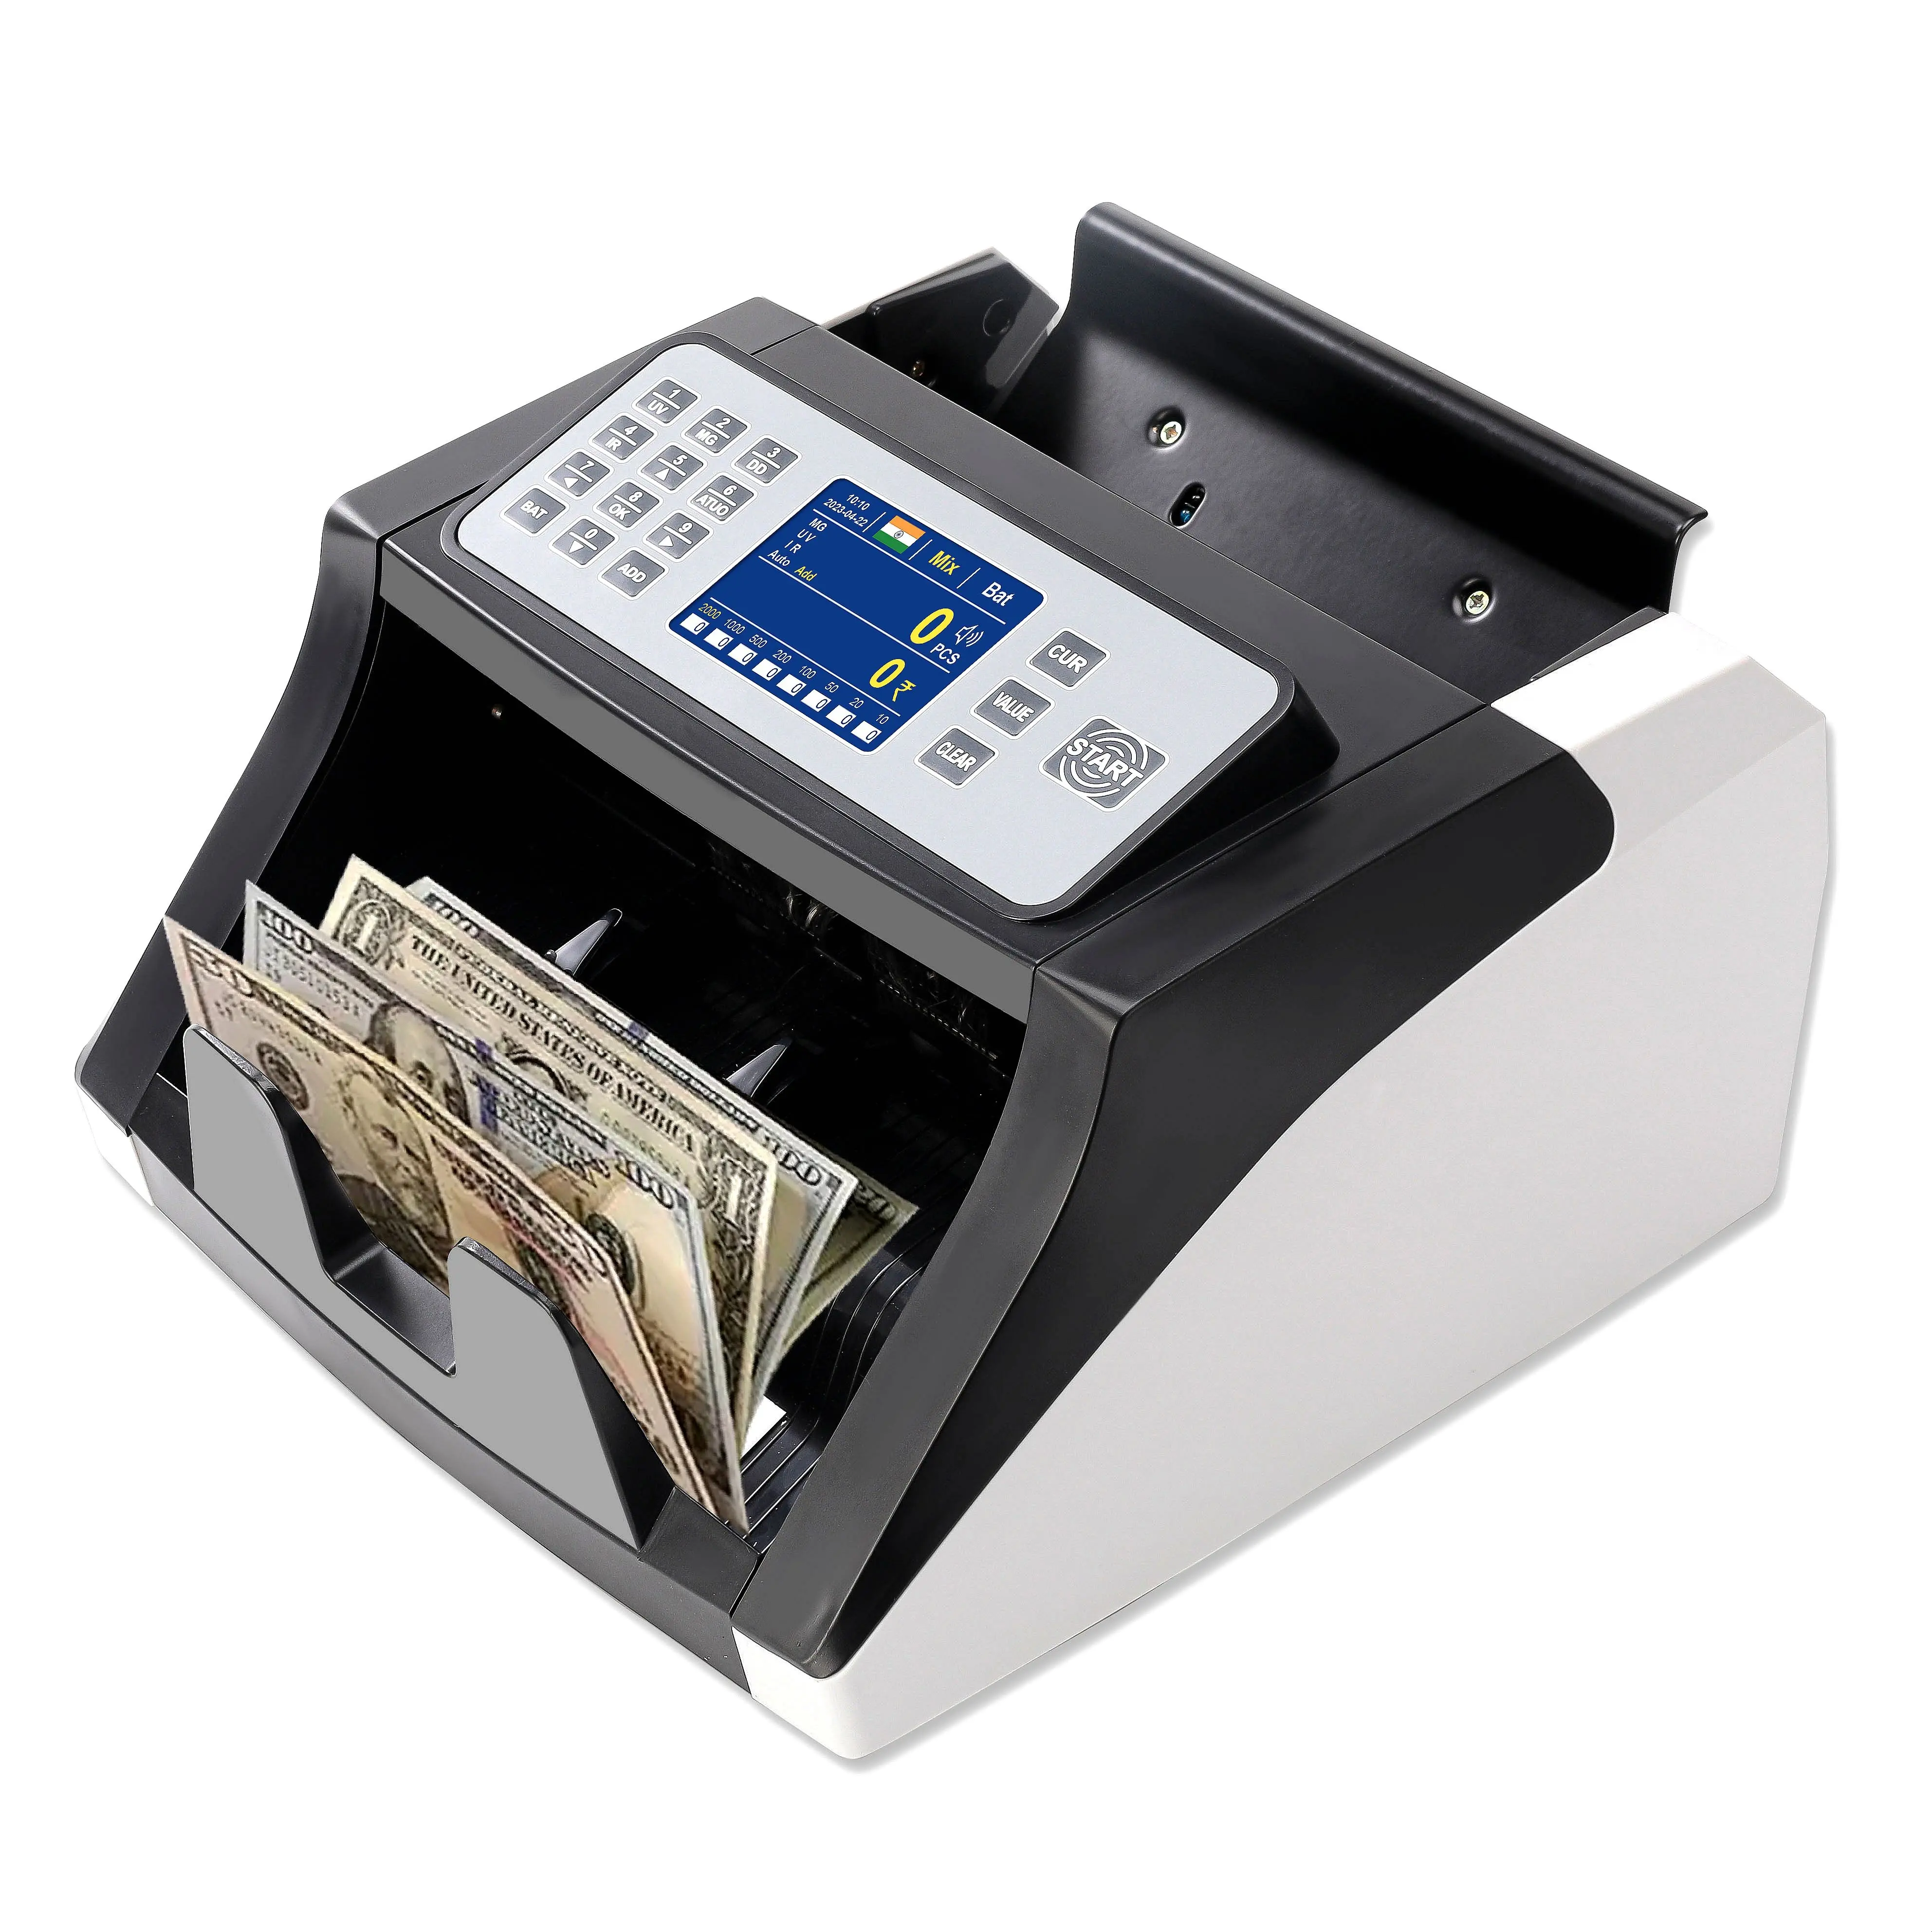 Счетчик HL-P20 банкнот ручной счетчик денег детектор денег счетчик денег UV/MG/IR детектор TFT дисплей счетчик банкнот